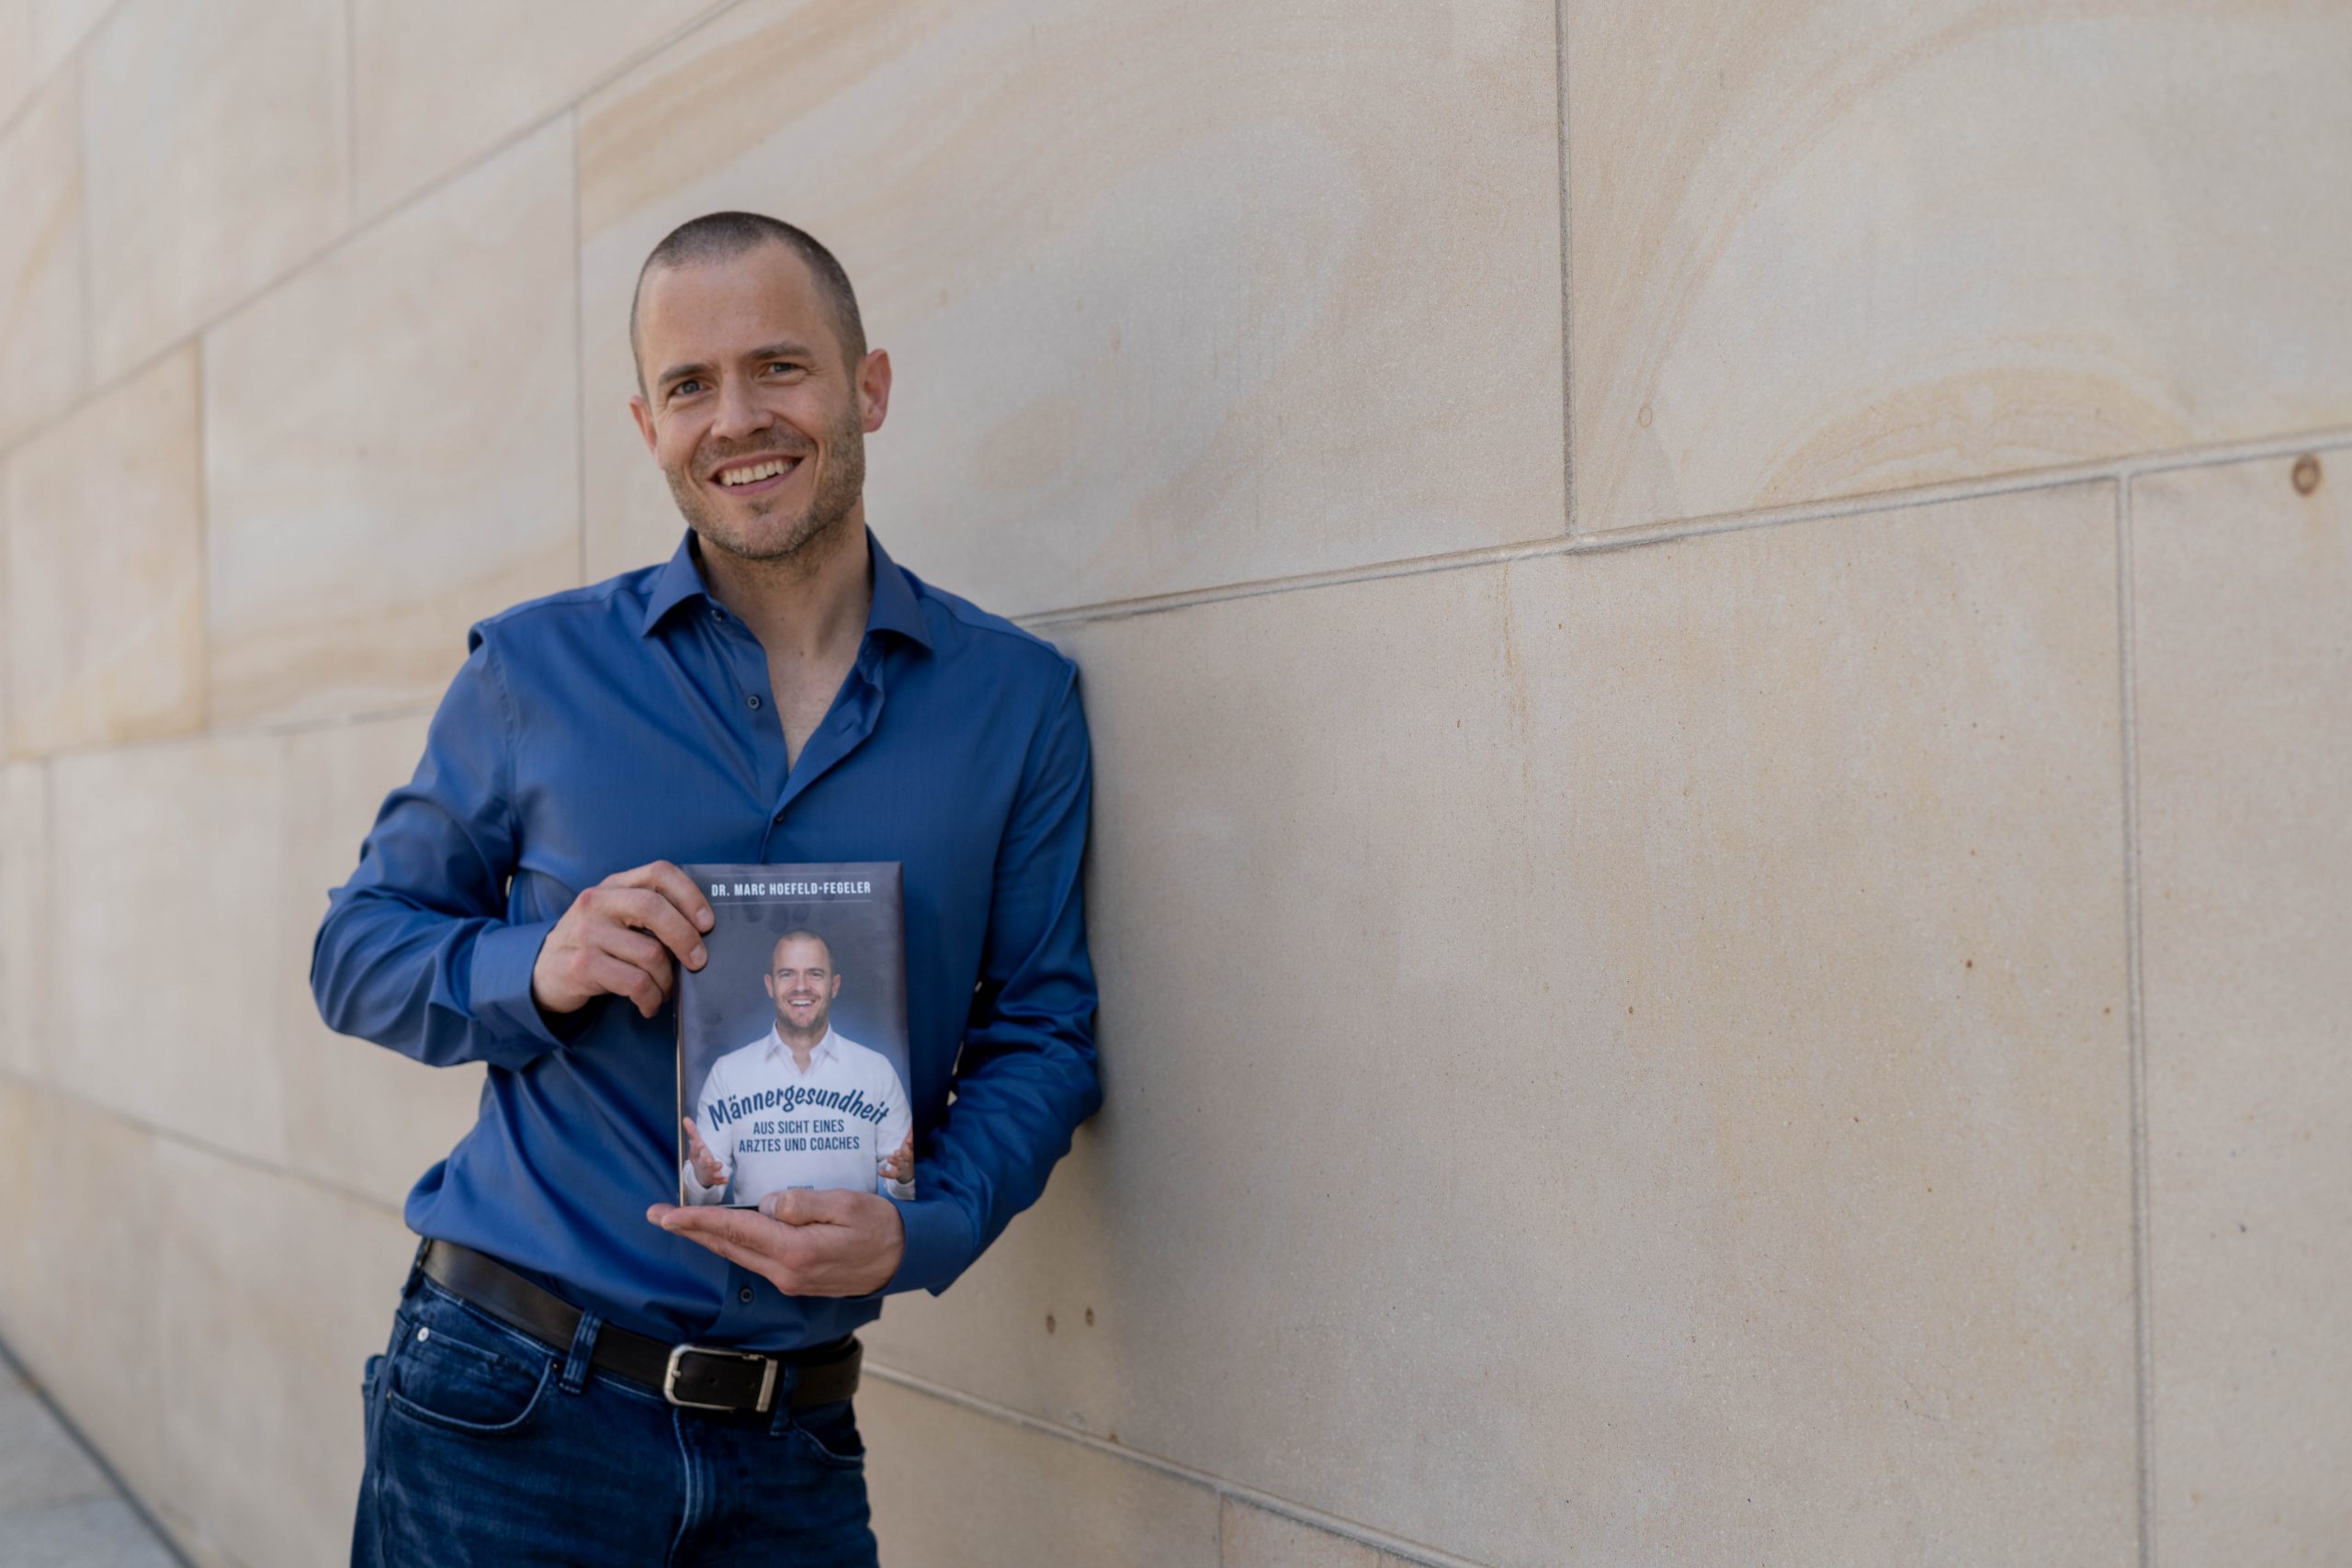 Dr. Marc steht mit seinem Buch "Männergesundheit" in der Hand, vor der NRW Bank in Münster